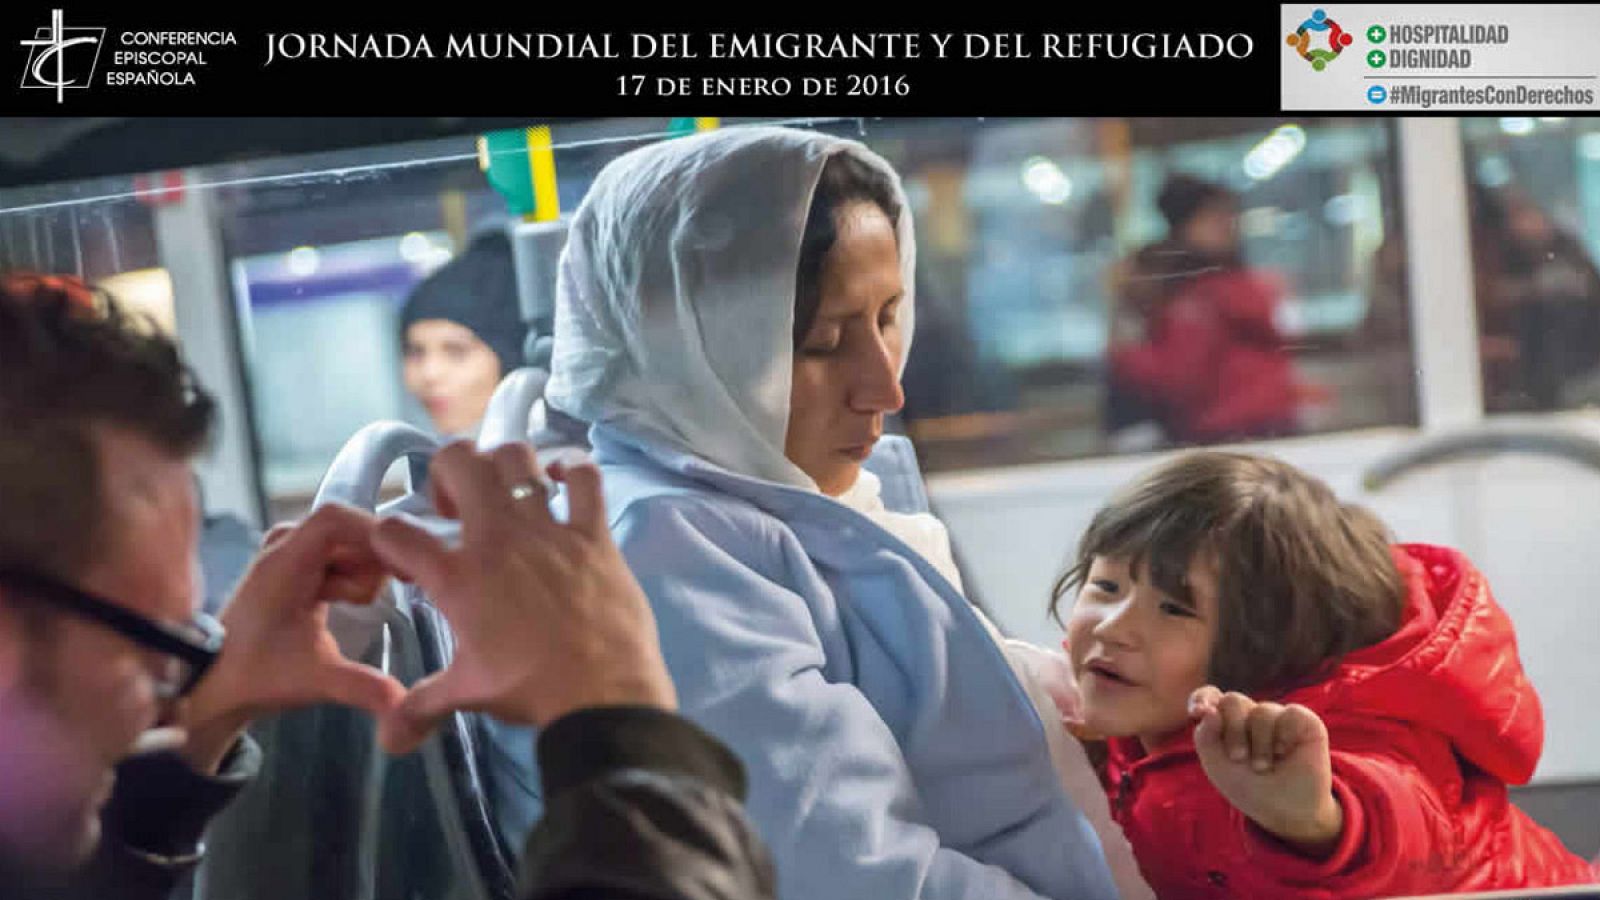 Cartel de la campaña de la Jornada Mundial del Emigrante y el Refugiado